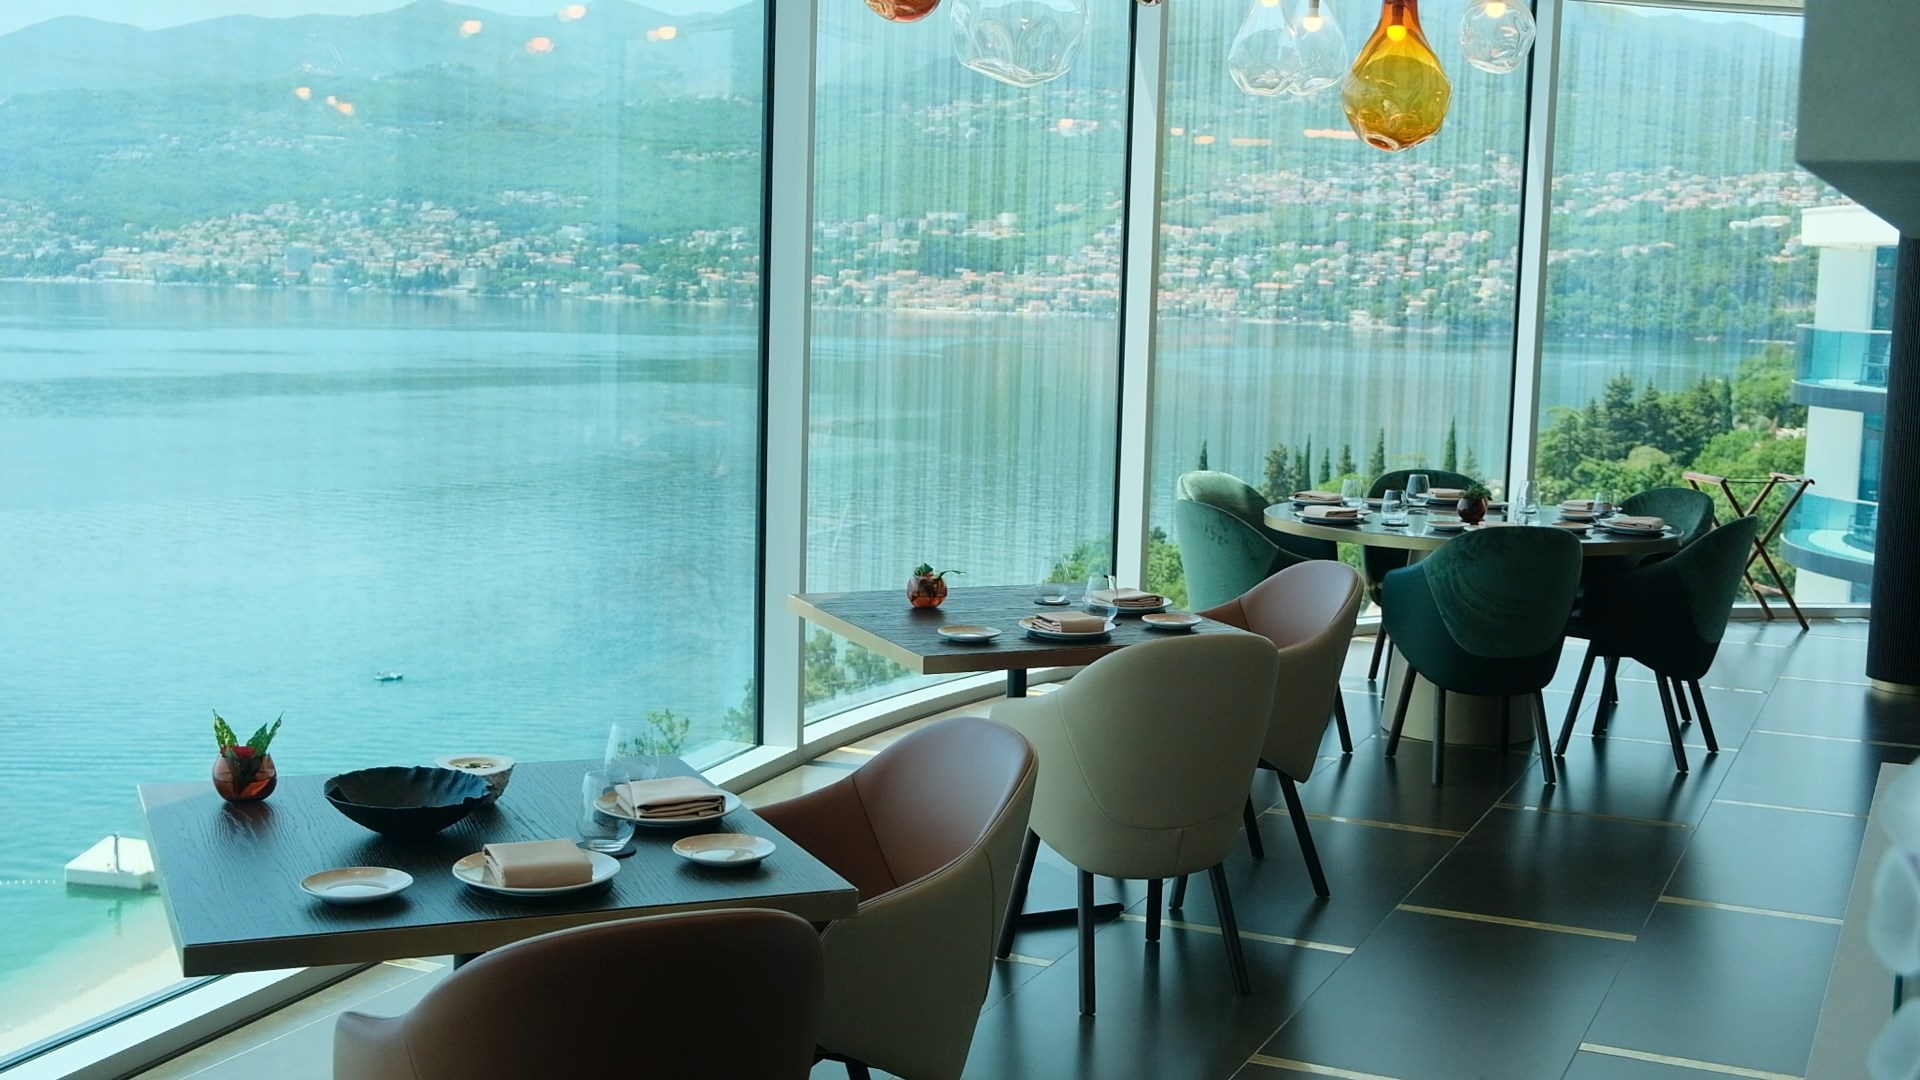 Restoran Nebo u sklopu Hiltona obogatio je gastro ponudu Kvarnera na najbolji način